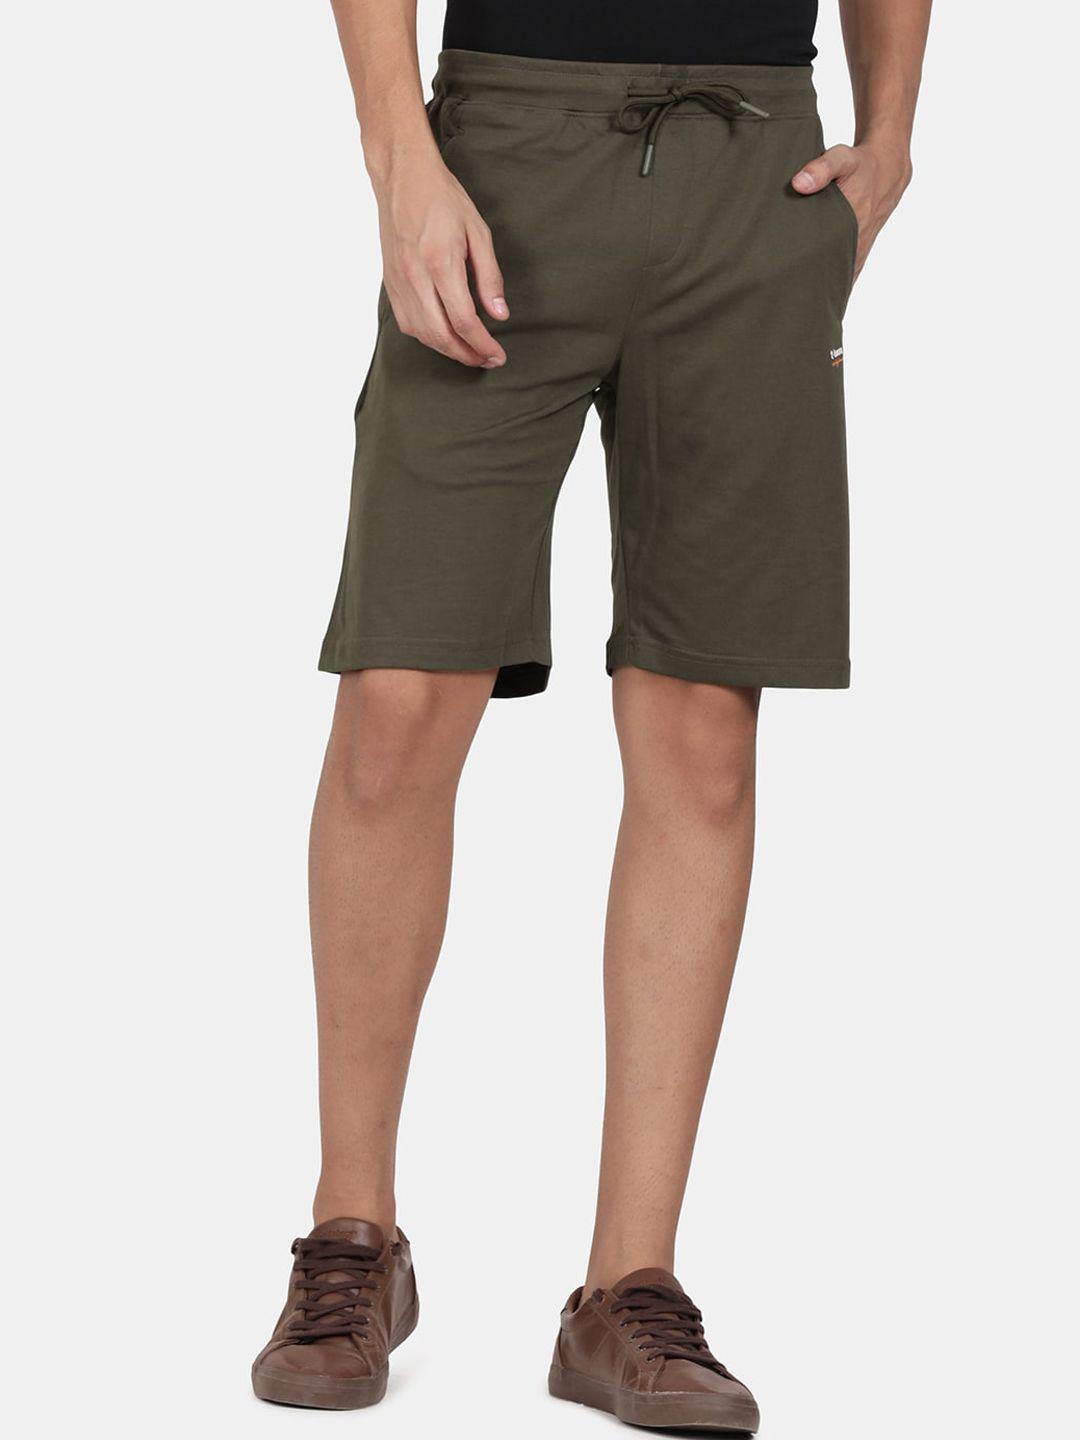 t-base men olive green shorts